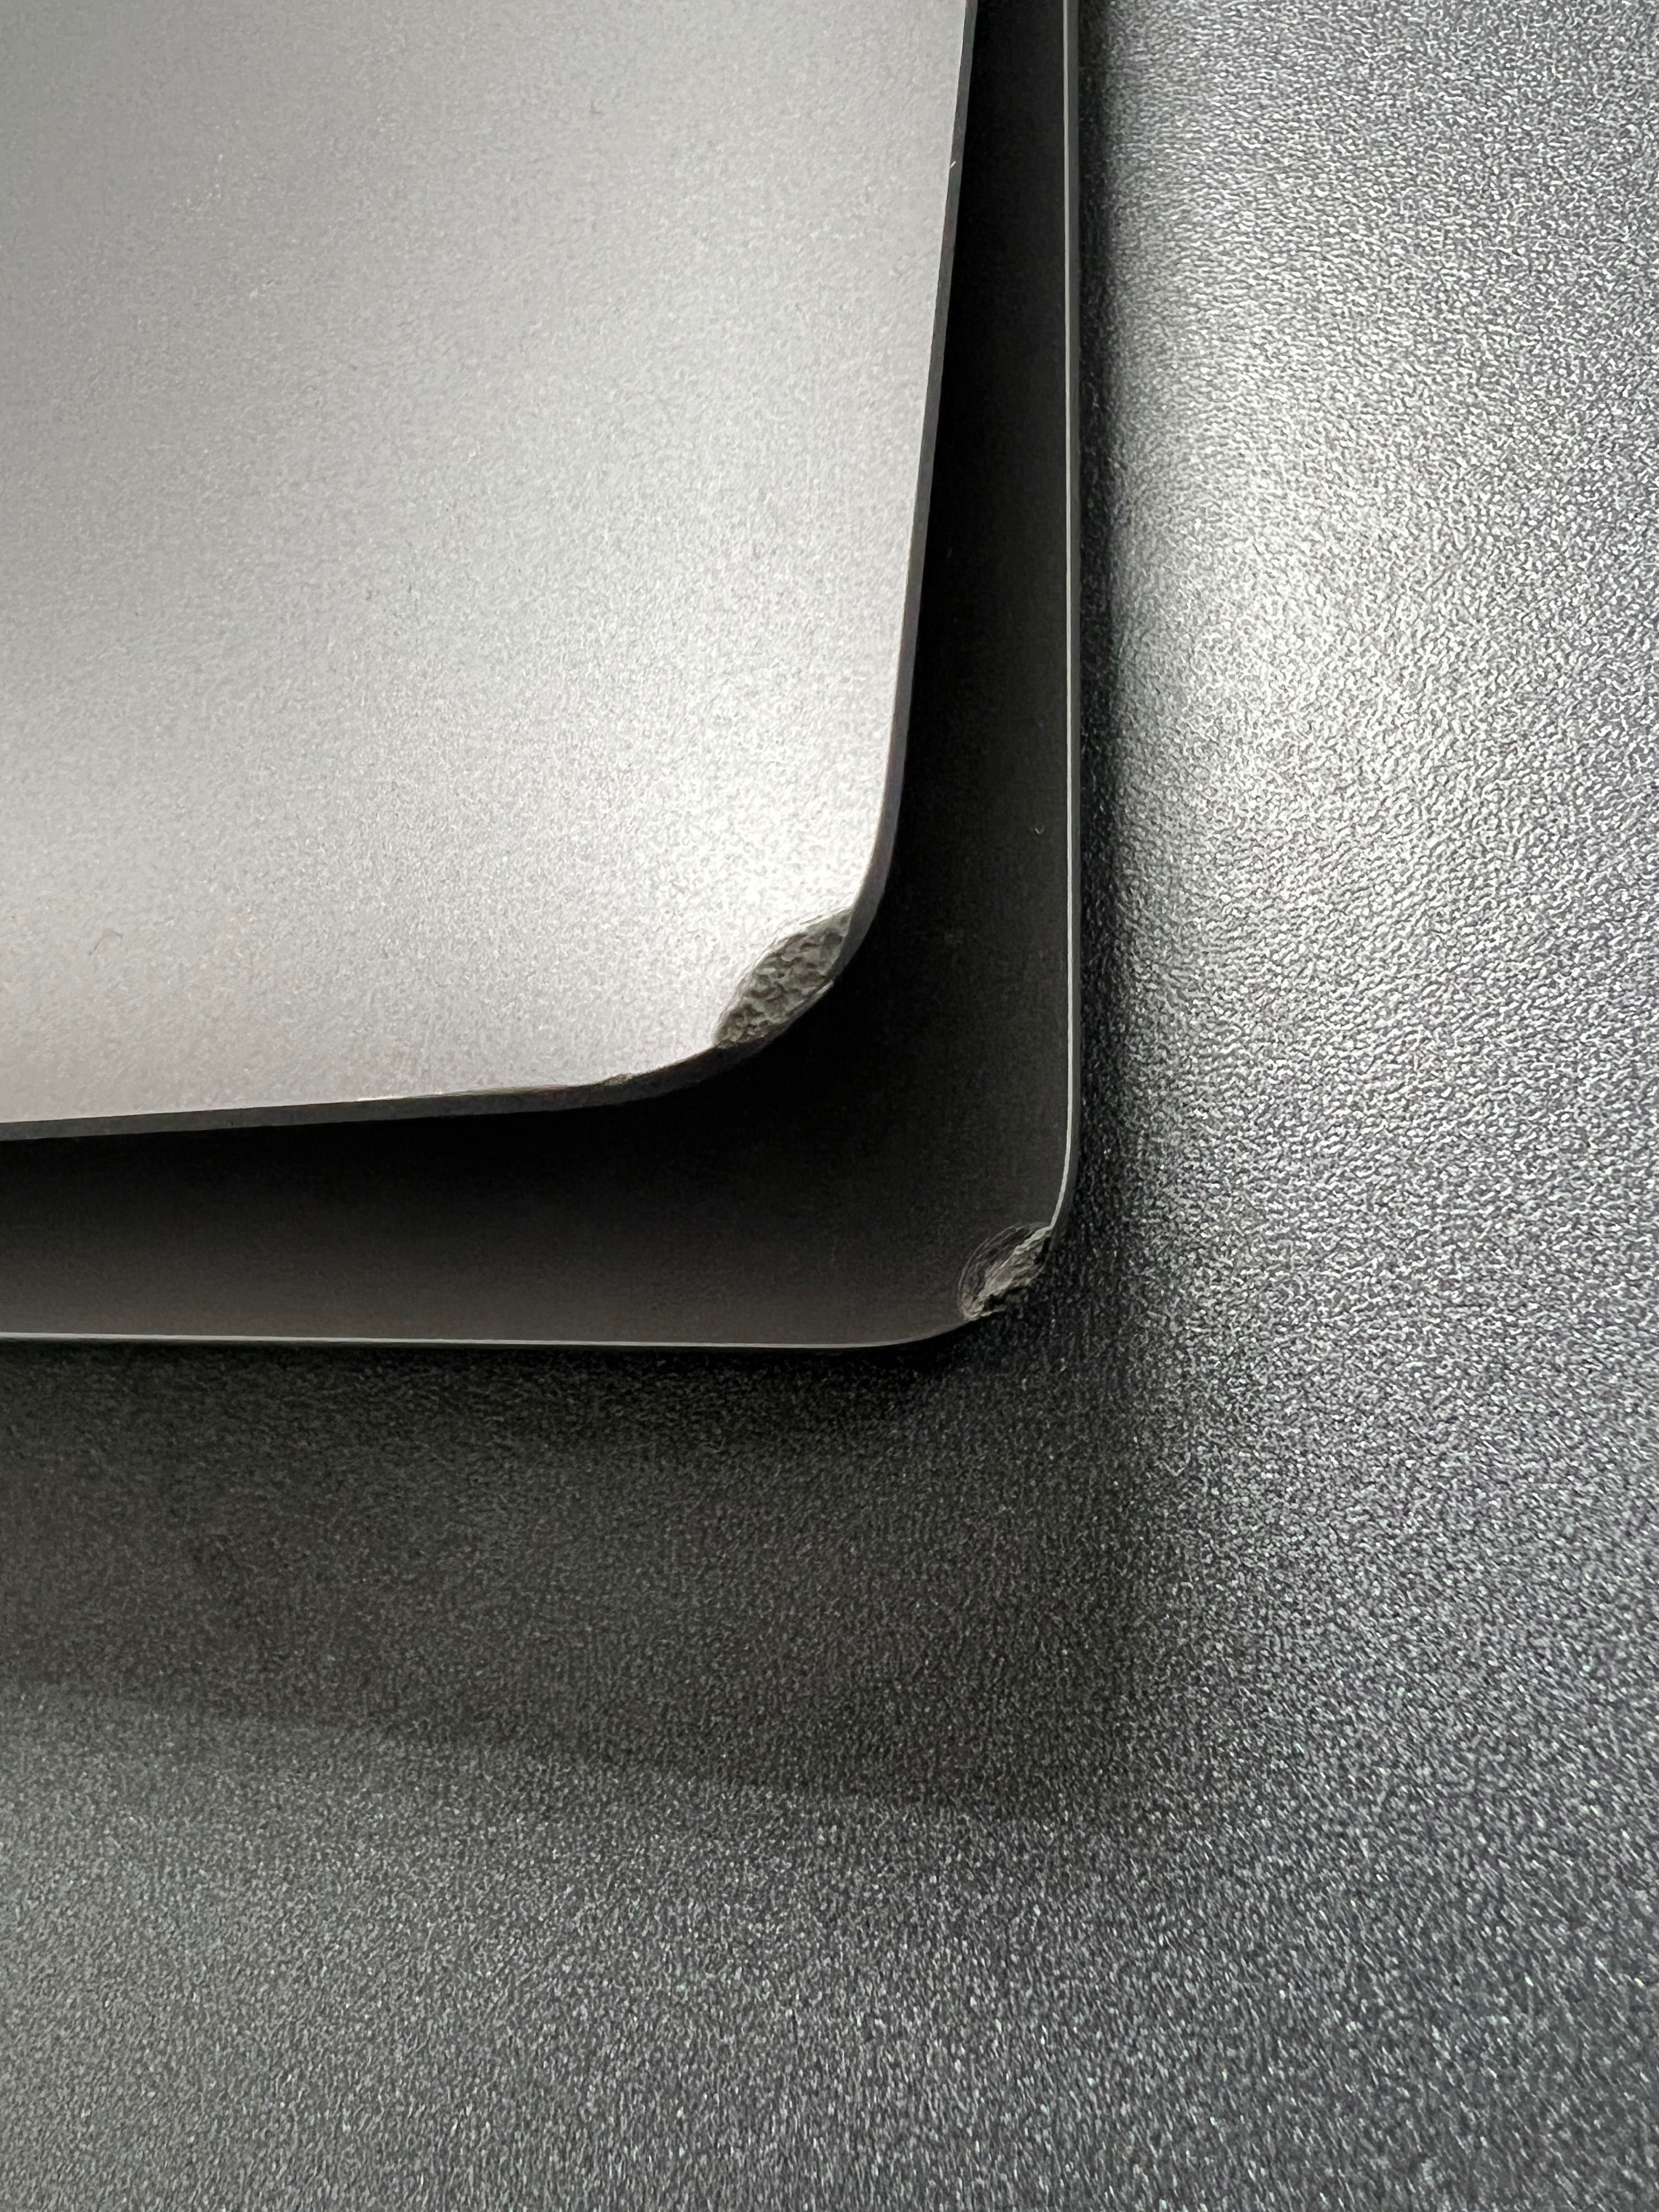 Macbook Air i5 128 SSD 2018 Retina дісплей. В ідеальному стані.